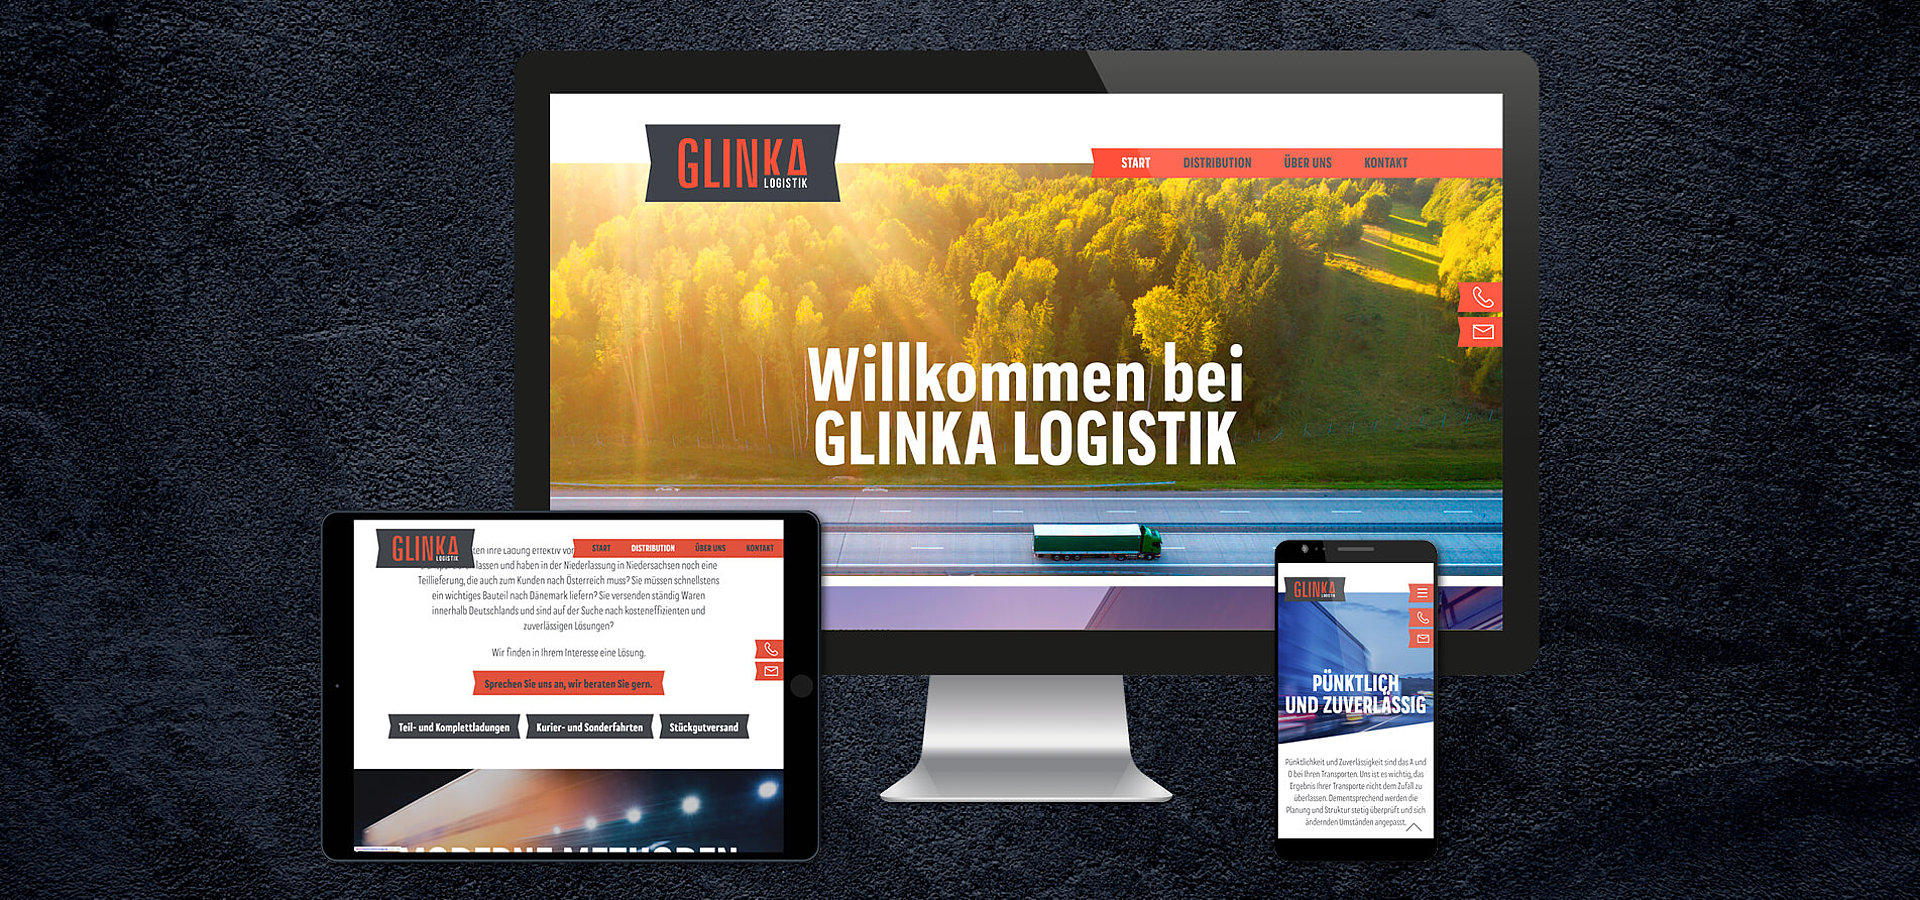 Statische Website: Onepager für Glinka Logistik GmbH